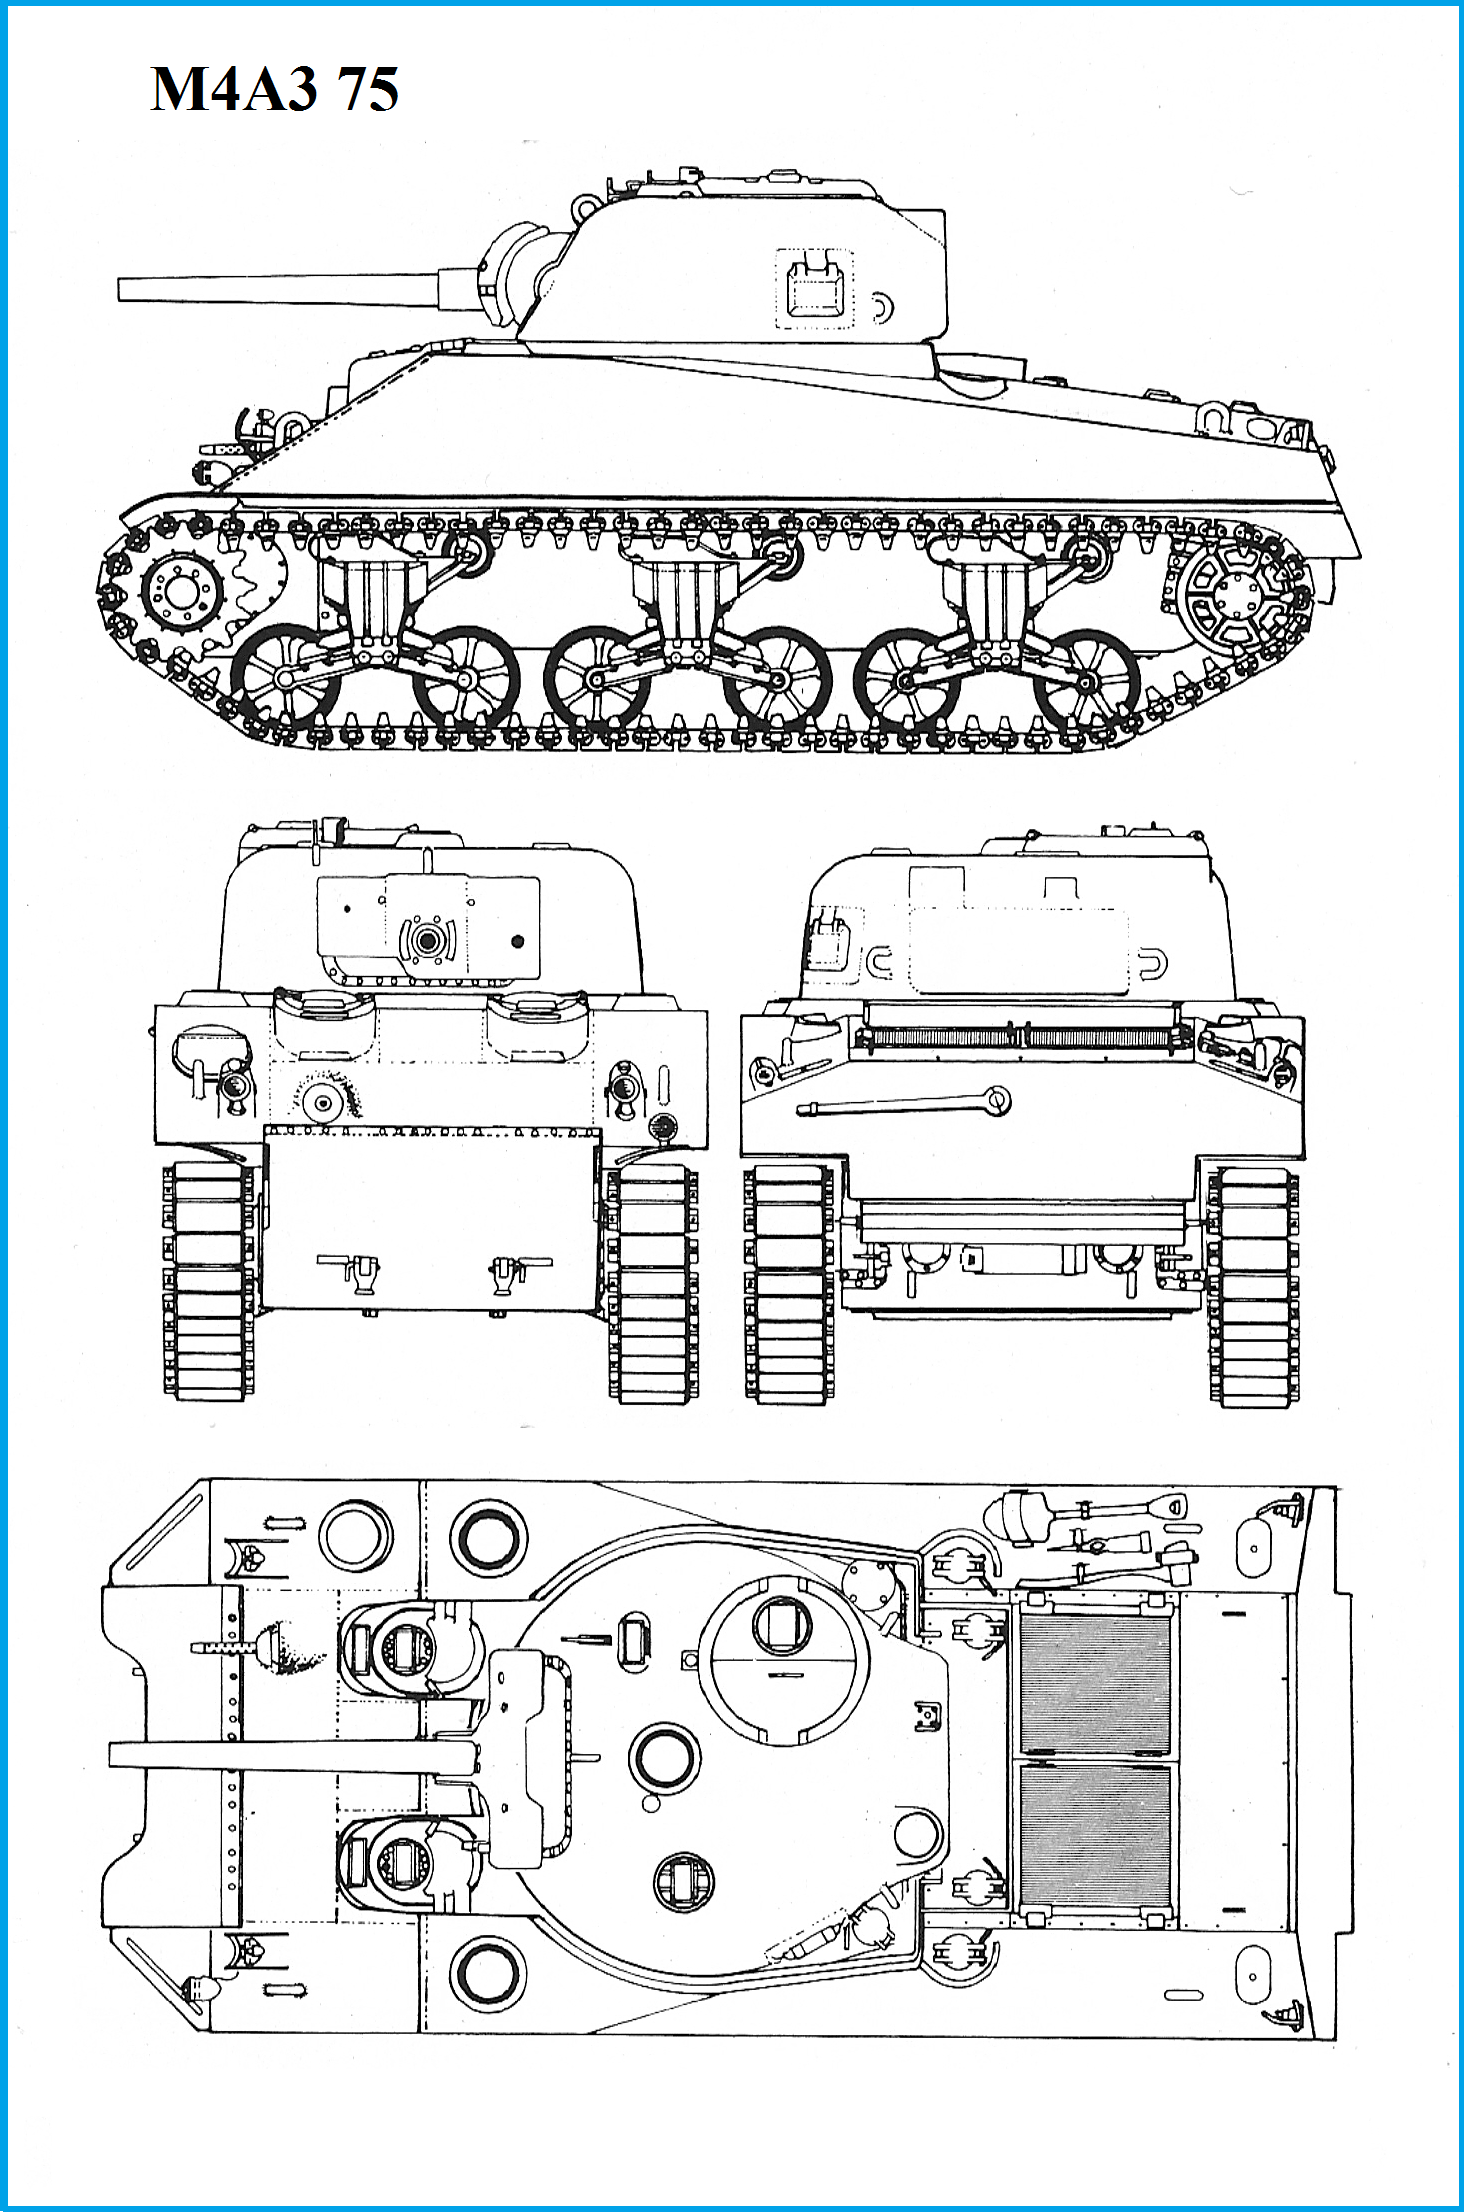 M4 Sherman Top View